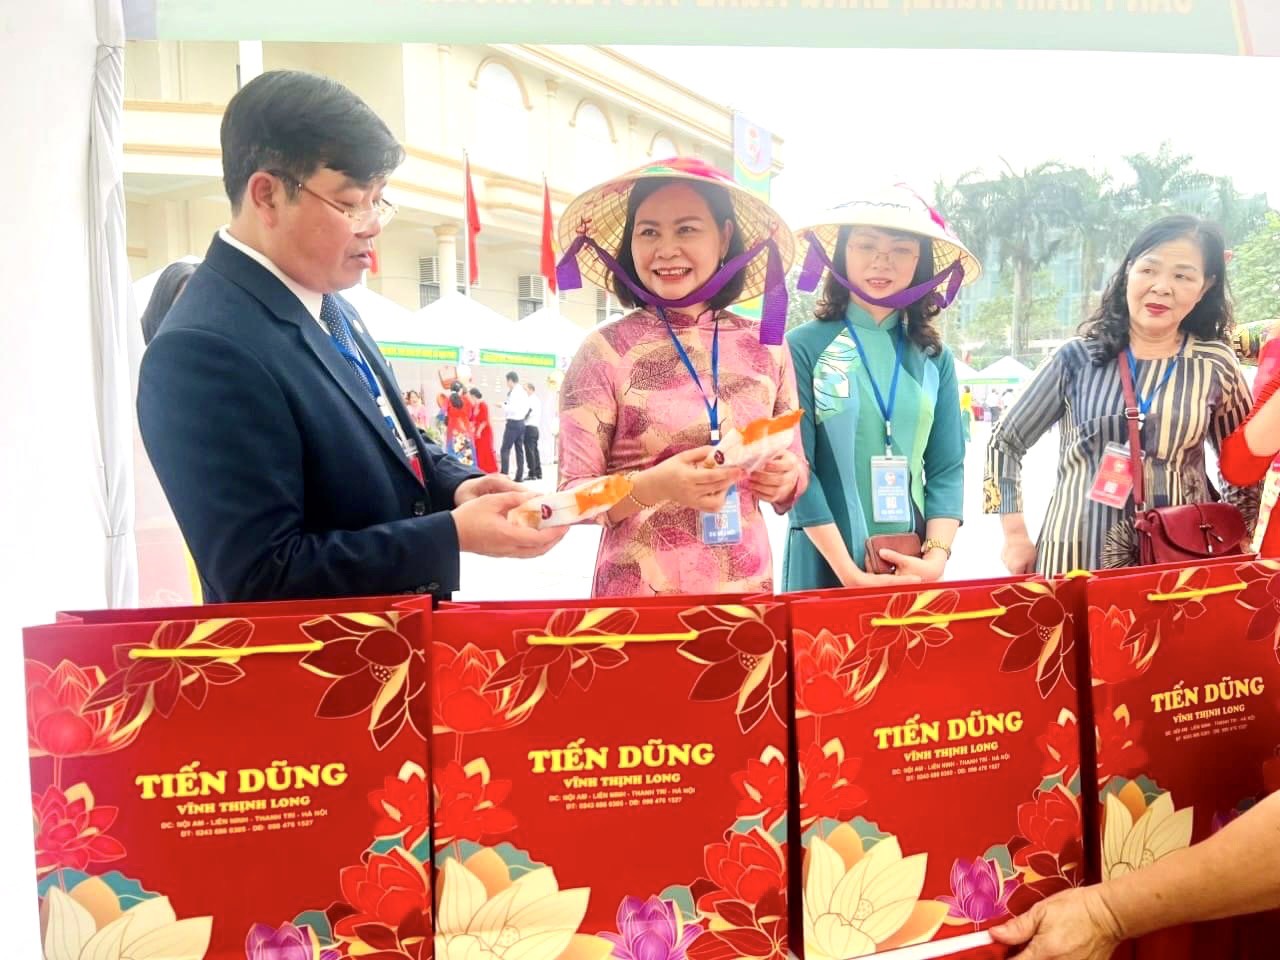 Hà Nội: Ông Nguyễn Sỹ Thành được bầu tái đắc cử chức Chủ tịch Hội Nông dân huyện Thanh Trì - Ảnh 4.